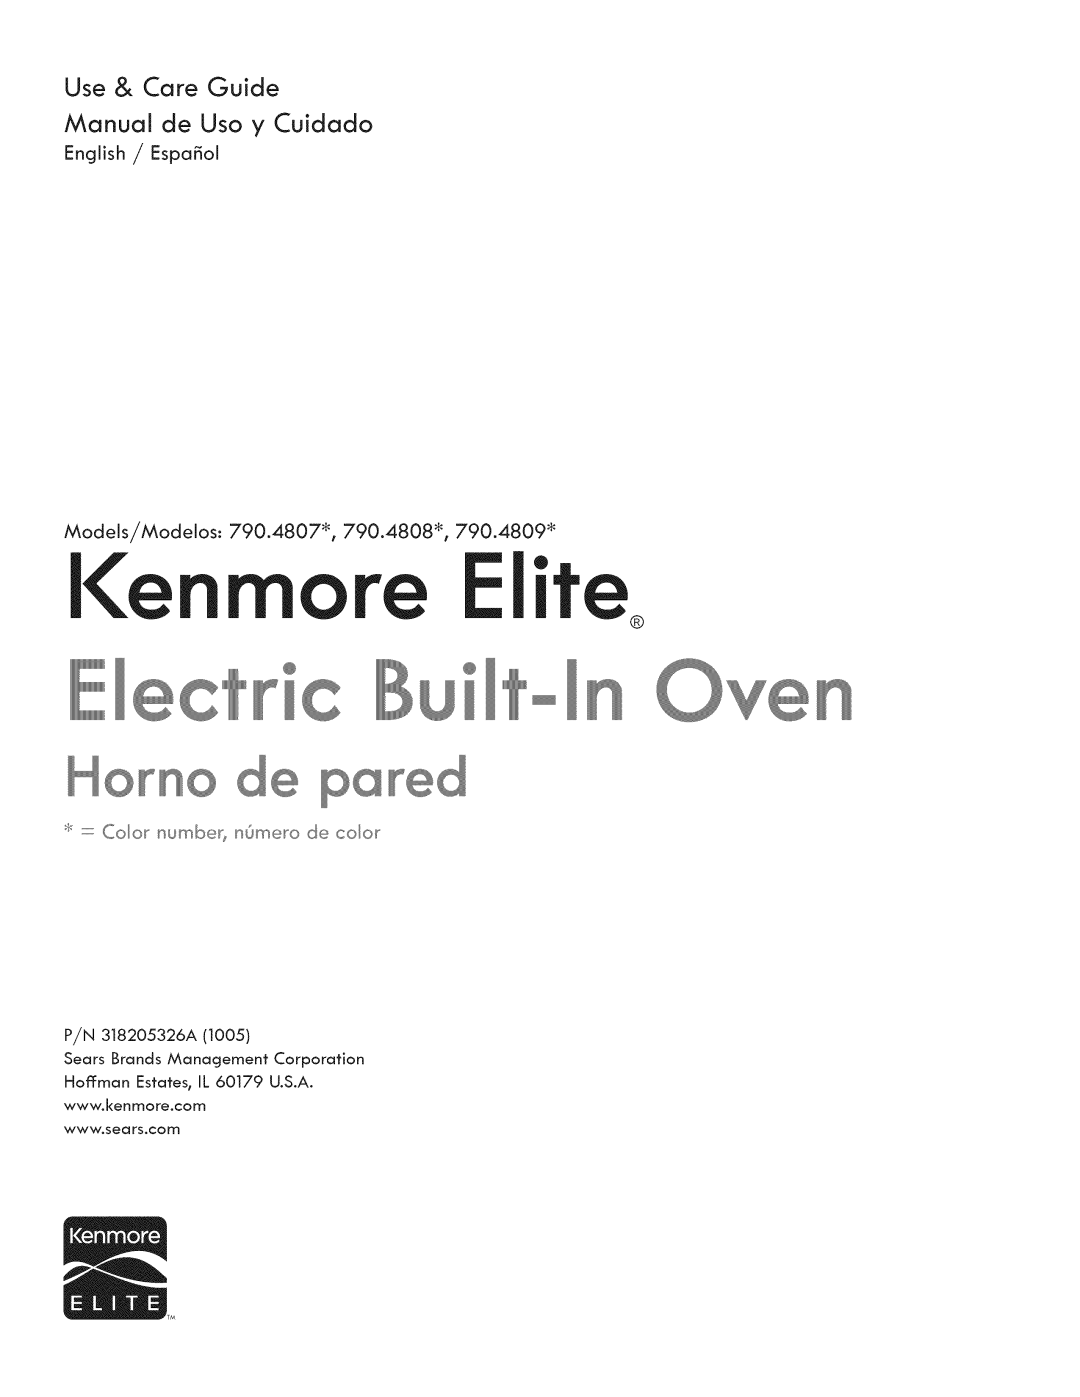 Kenmore manual I e Elite, Use & Care Guide, English / Espa_ol, Models/Modelos: 790.4807% 790.4808% 790.4809 _ 